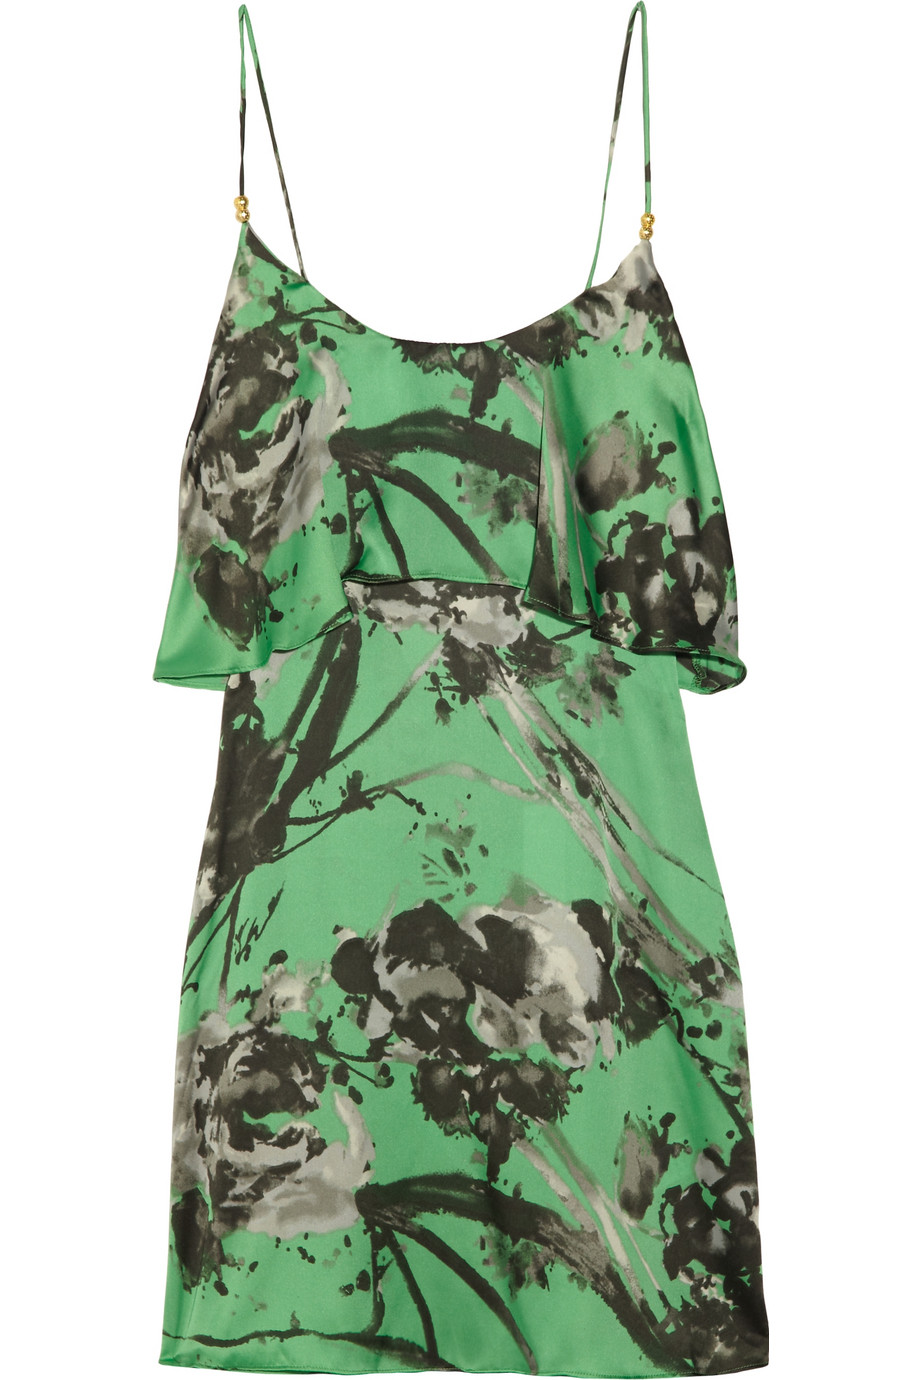 Lyst - T-bags Floral-print Satin Mini Dress in Green